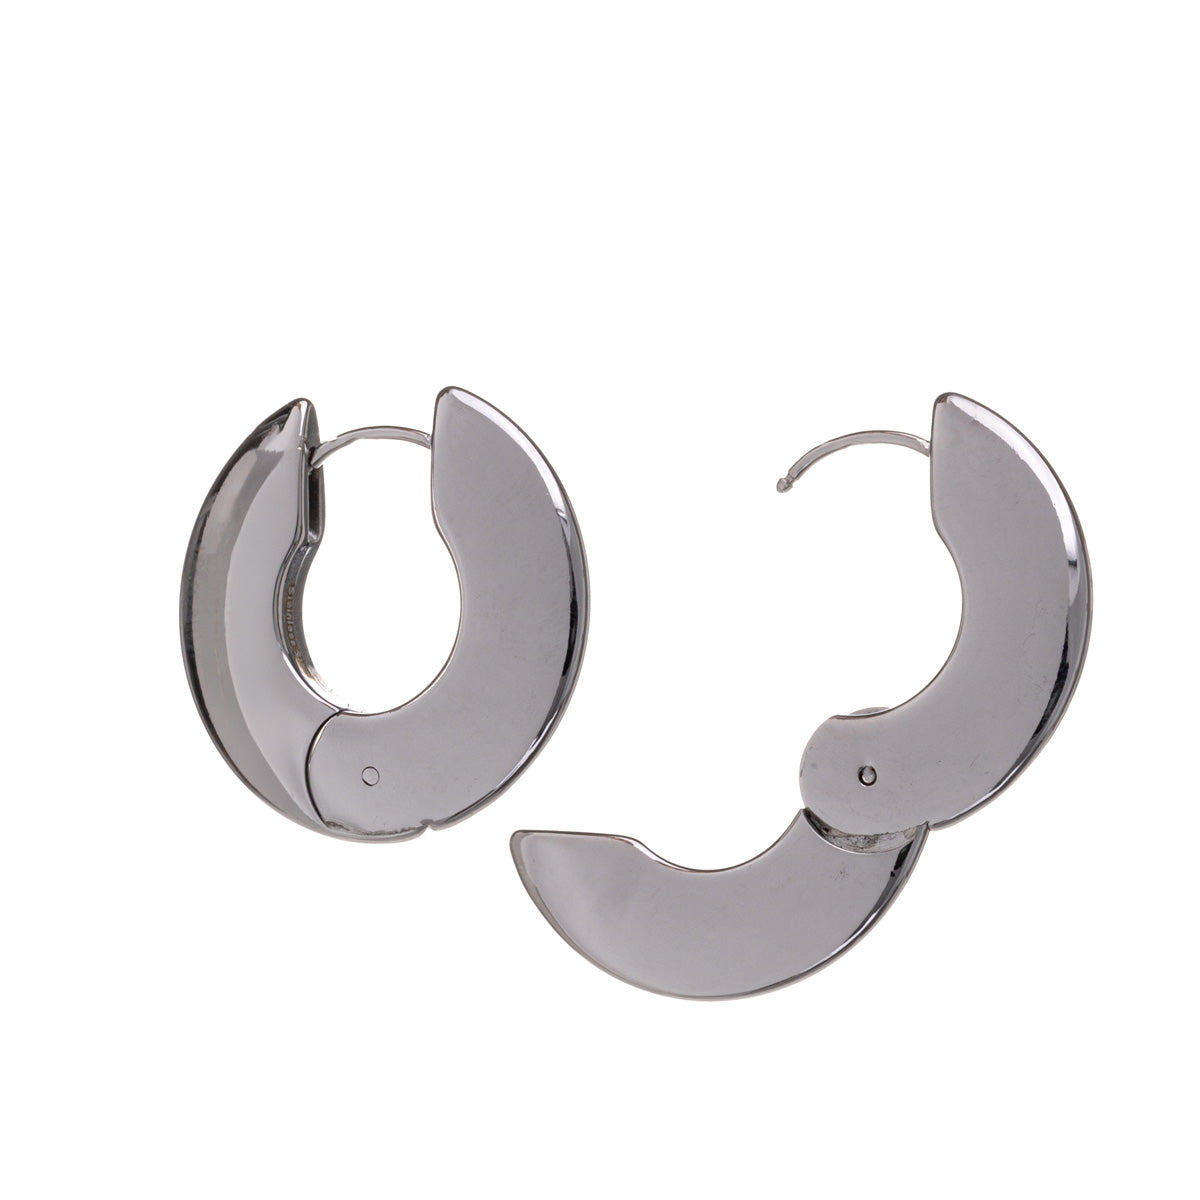 Flat earrings steel ring earrings 2,4cm